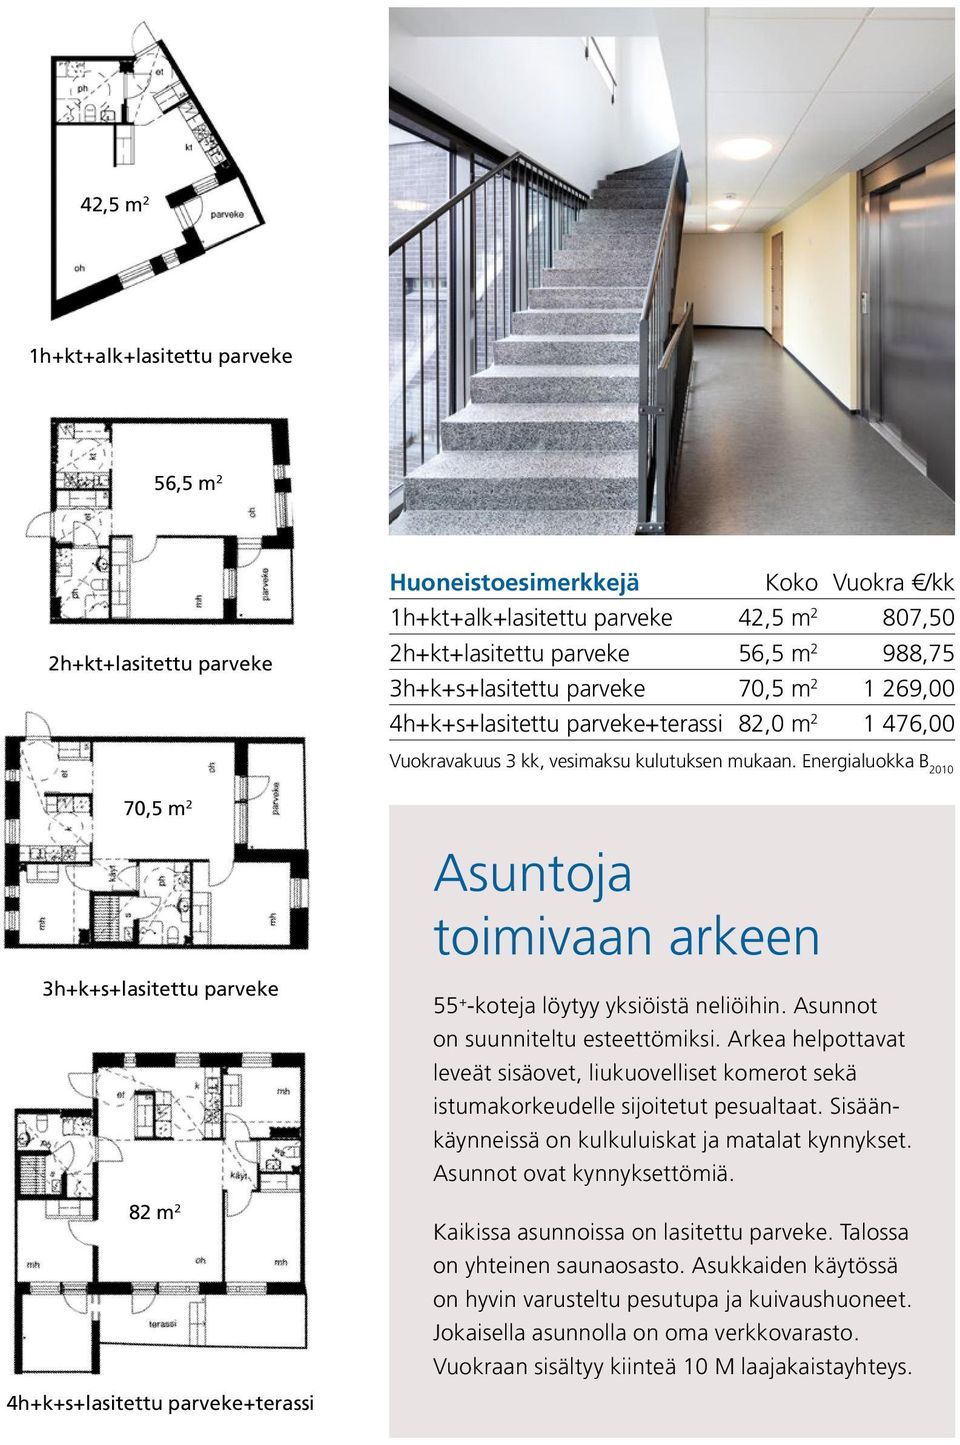 Energialuokka B 2010 70,5 m 2 Asuntoja toimivaan arkeen 3h+k+s+lasitettu parveke 82 m 2 4h+k+s+lasitettu parveke+terassi 55 + -koteja löytyy yksiöistä neliöihin. Asunnot on suunniteltu esteettömiksi.